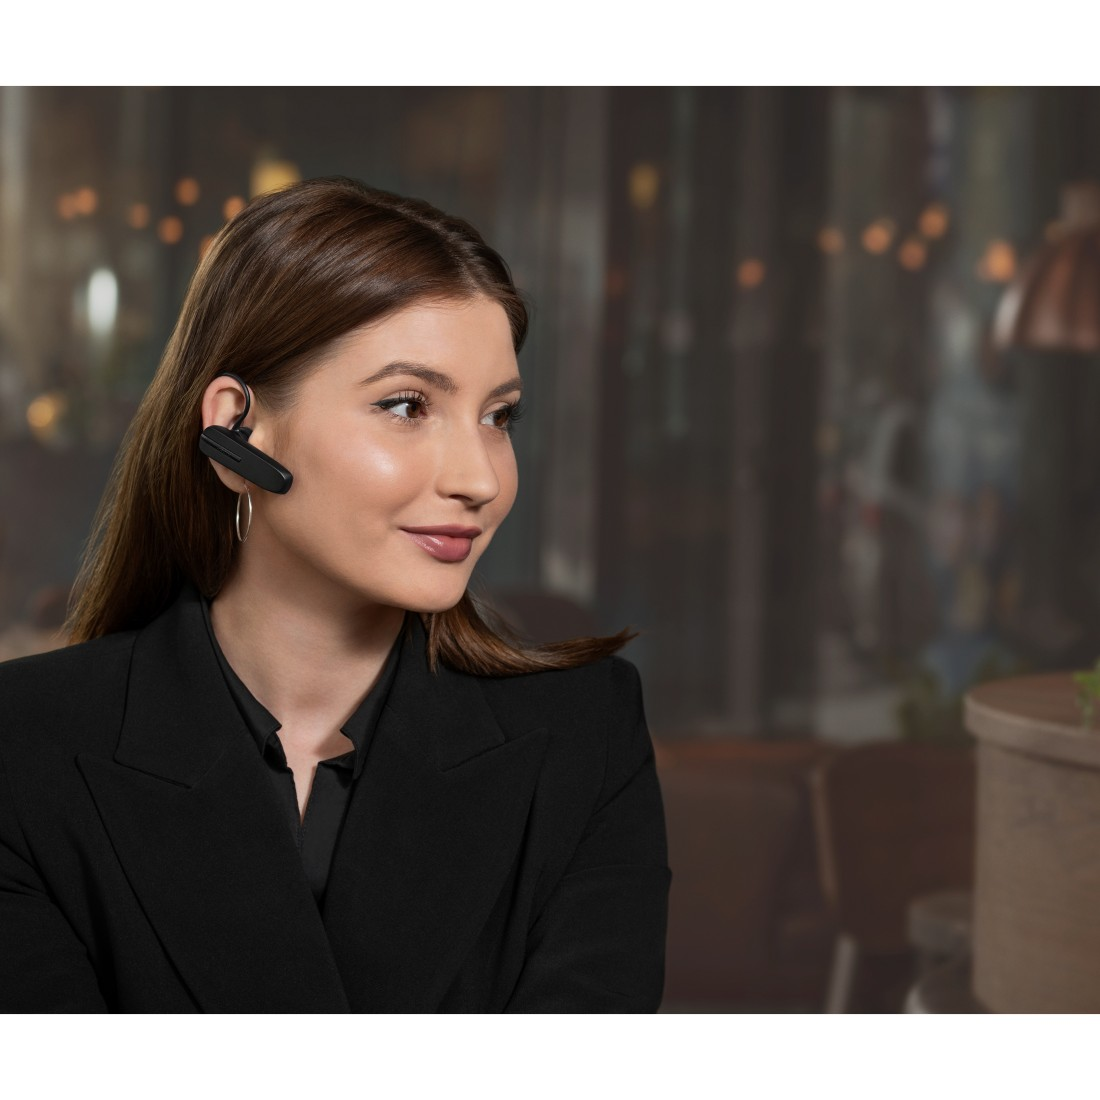 Bluetooth In-ear JABRA Schwarz Headset 5, Talk